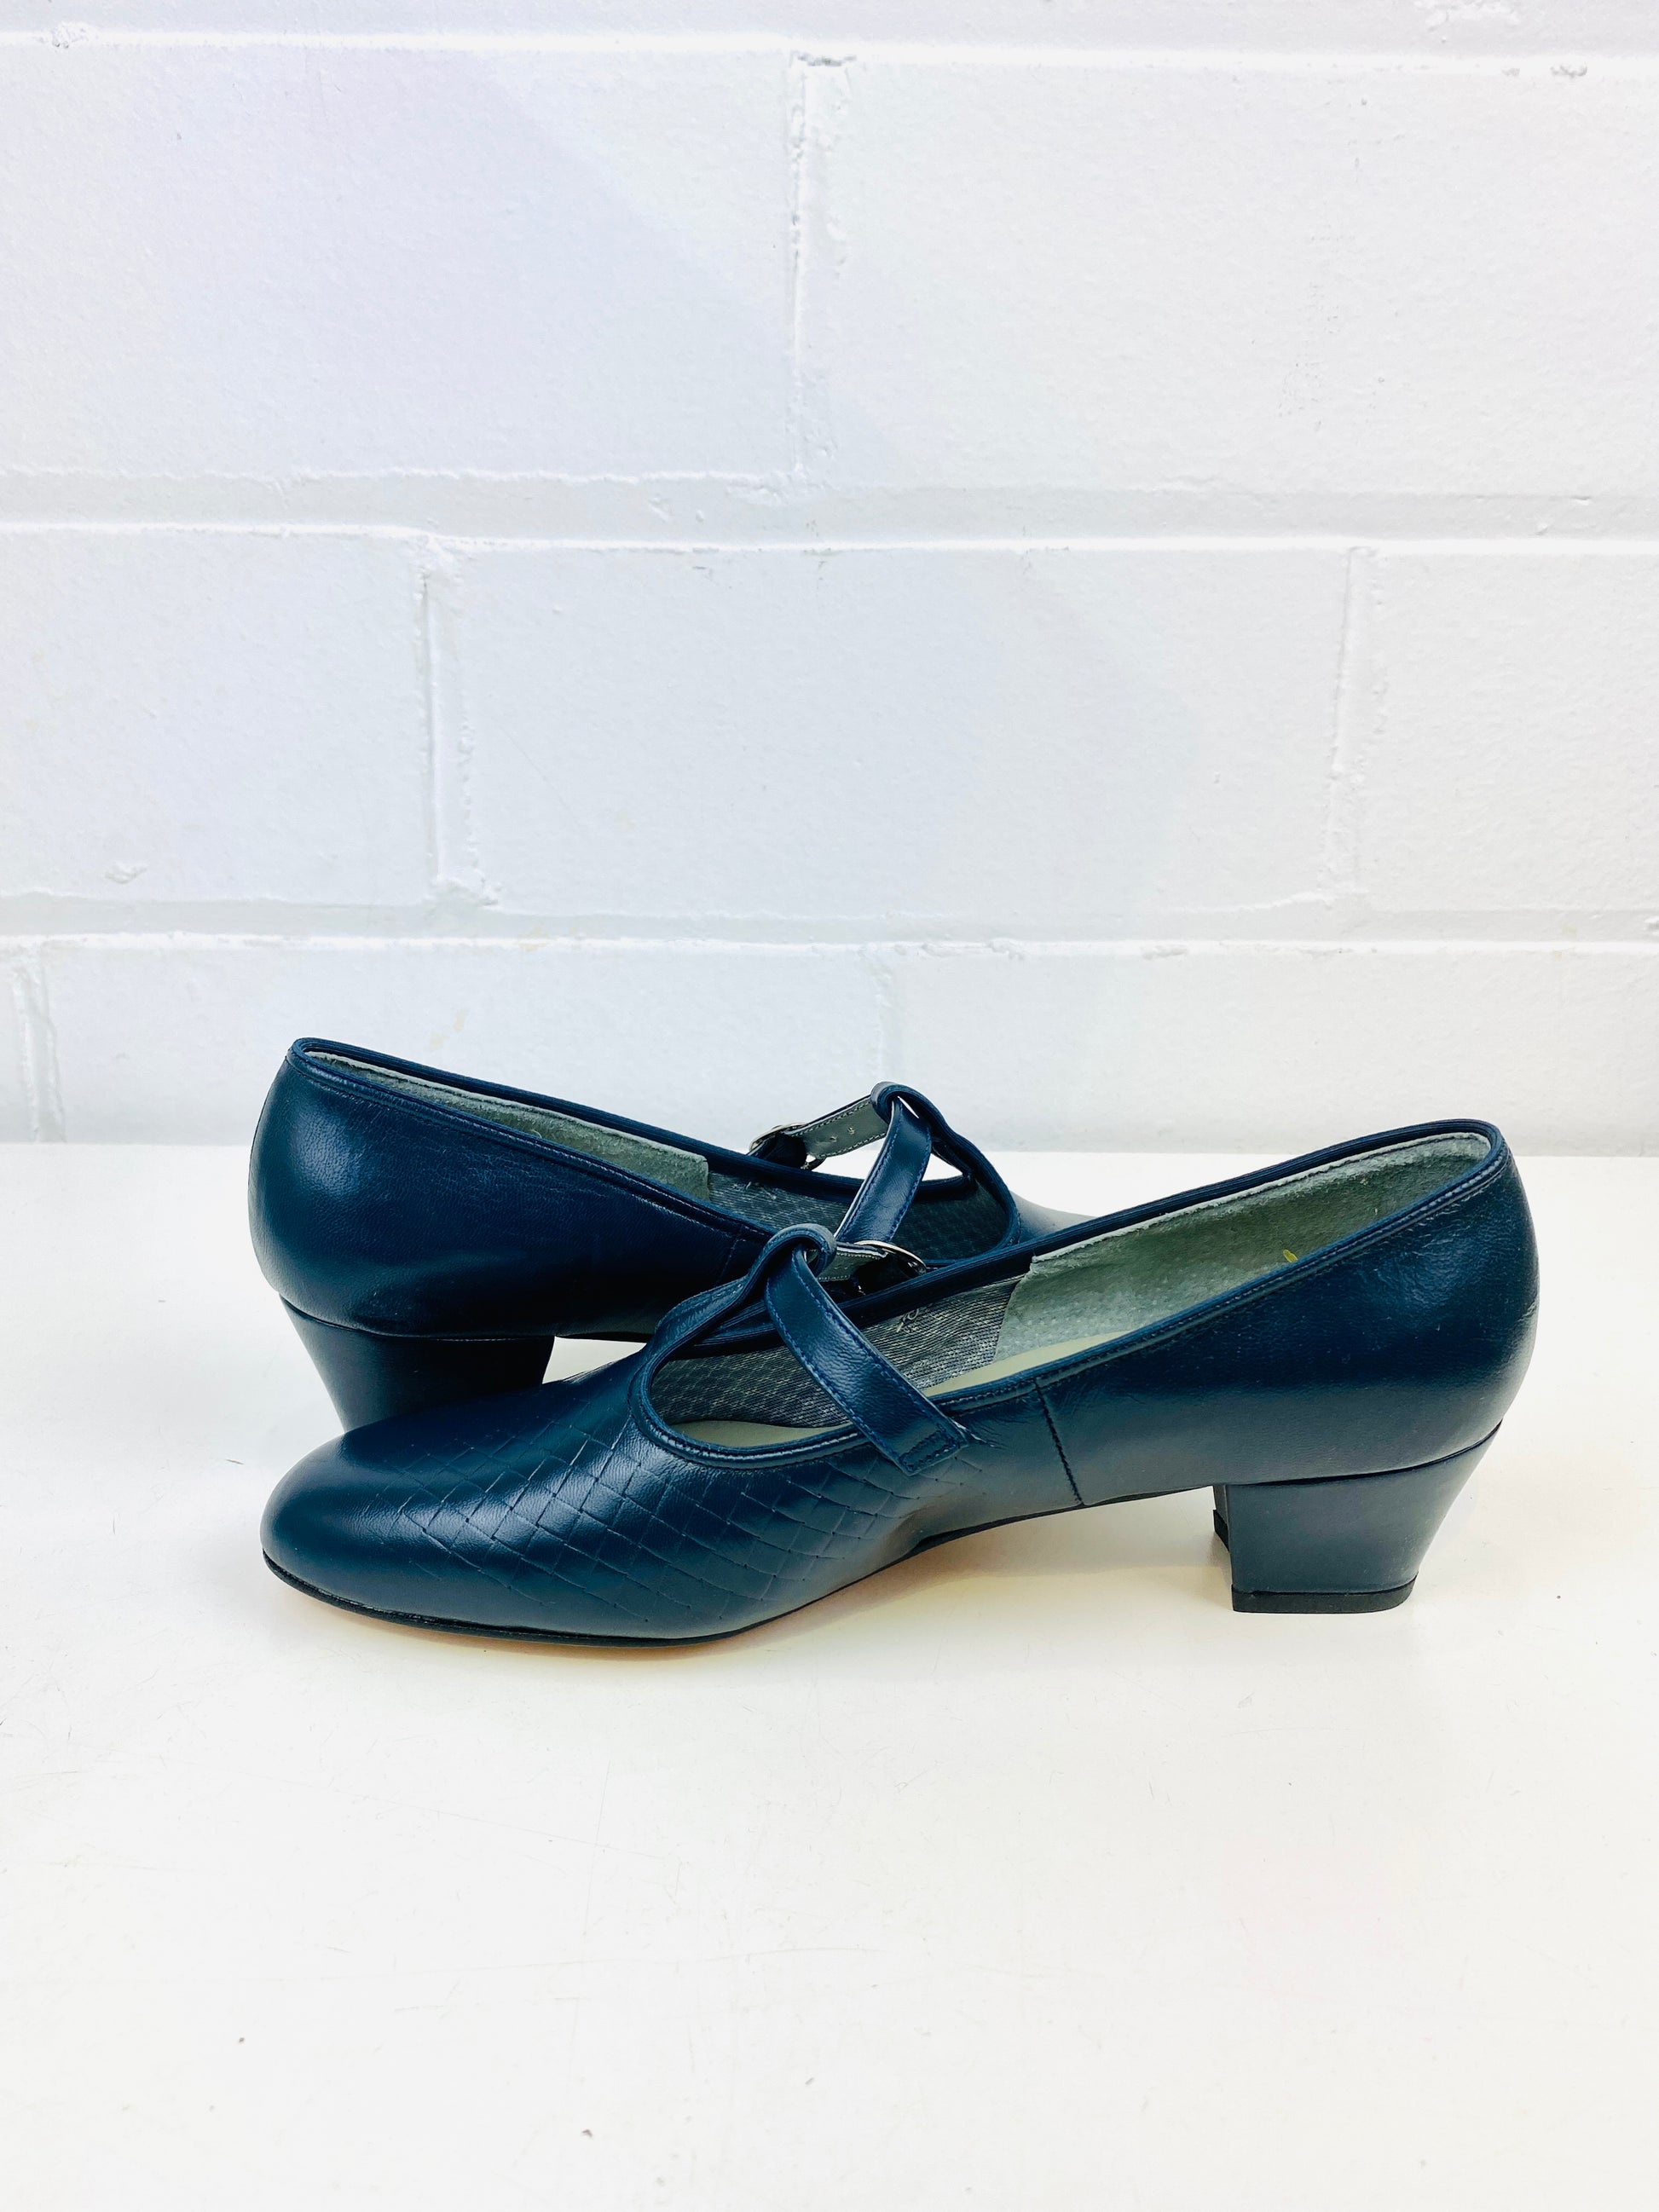 Vintage Deadstock Shoes, Women's 1980s Blue Leather Cuban Heel T-Strap Pump's, NOS